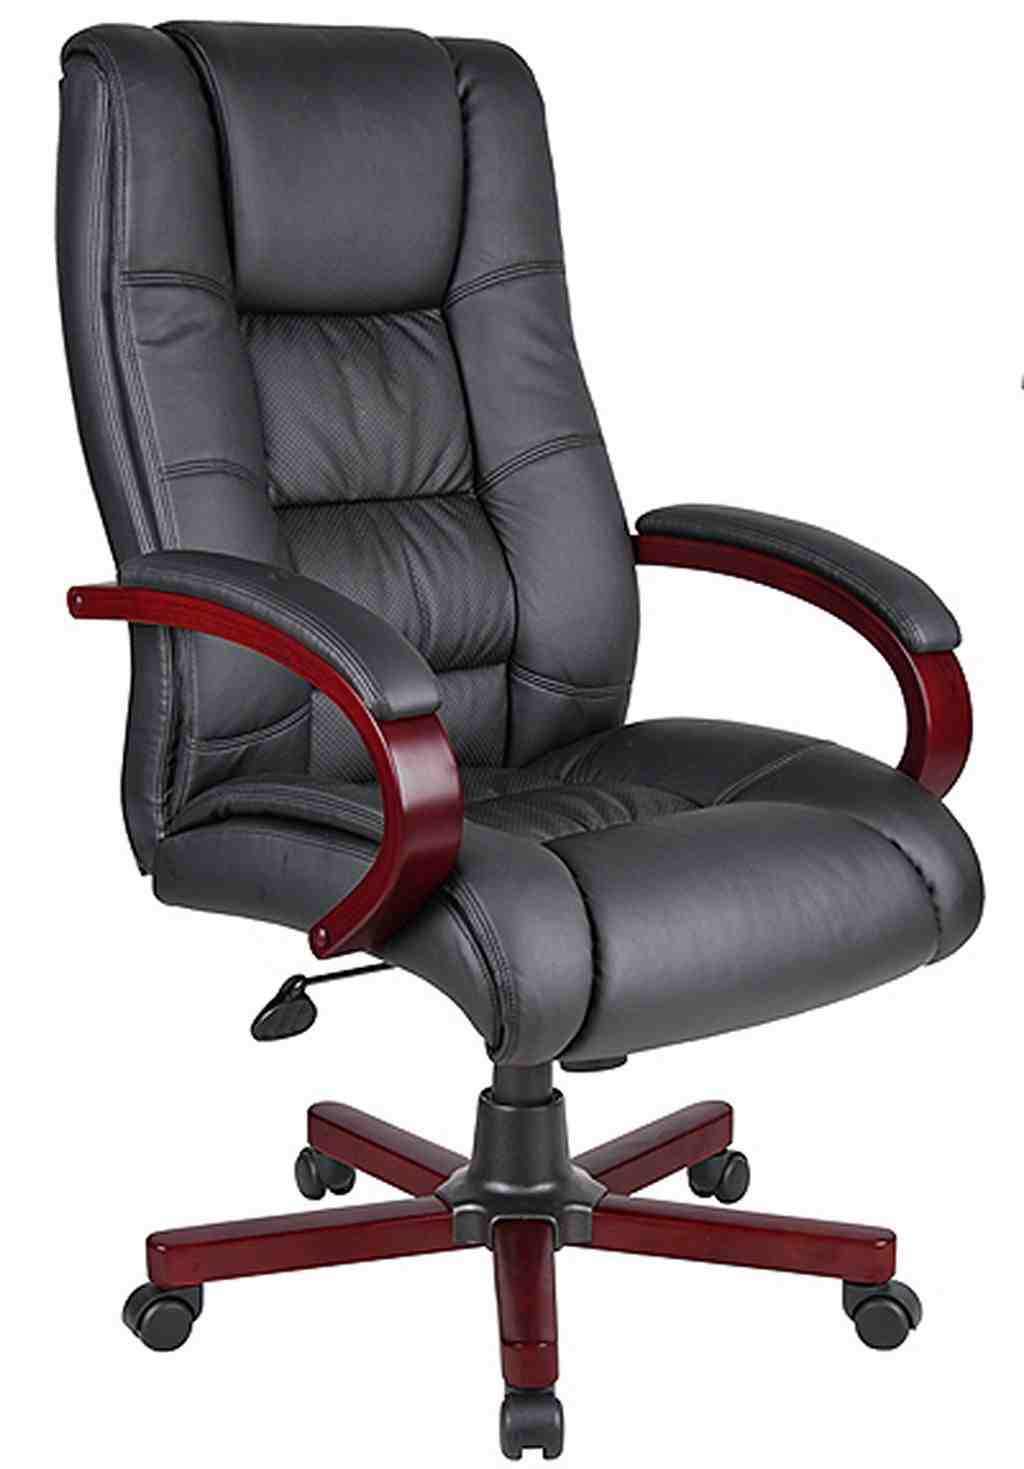 High Back Black Leather Executive Office Chair - Decor Ideas